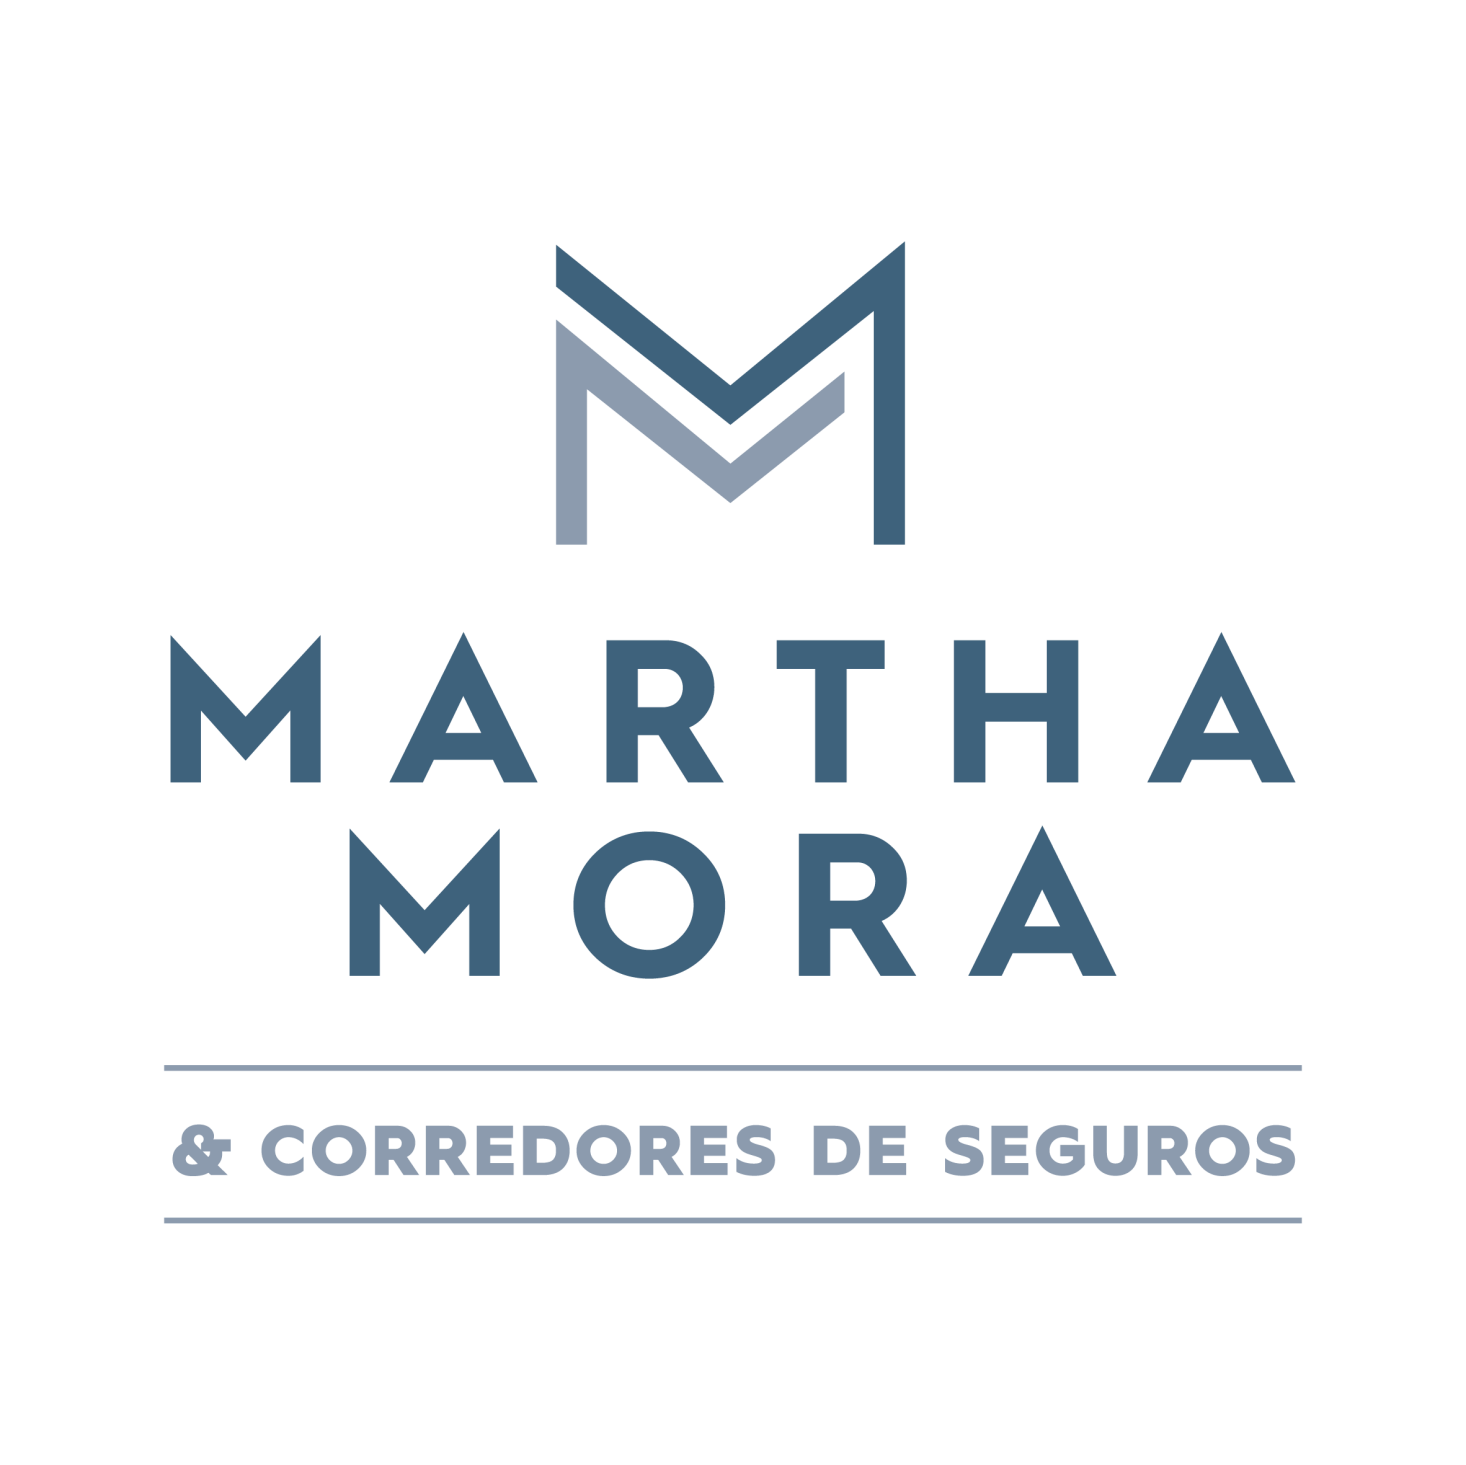 Martha Mora - Corredores de Seguros